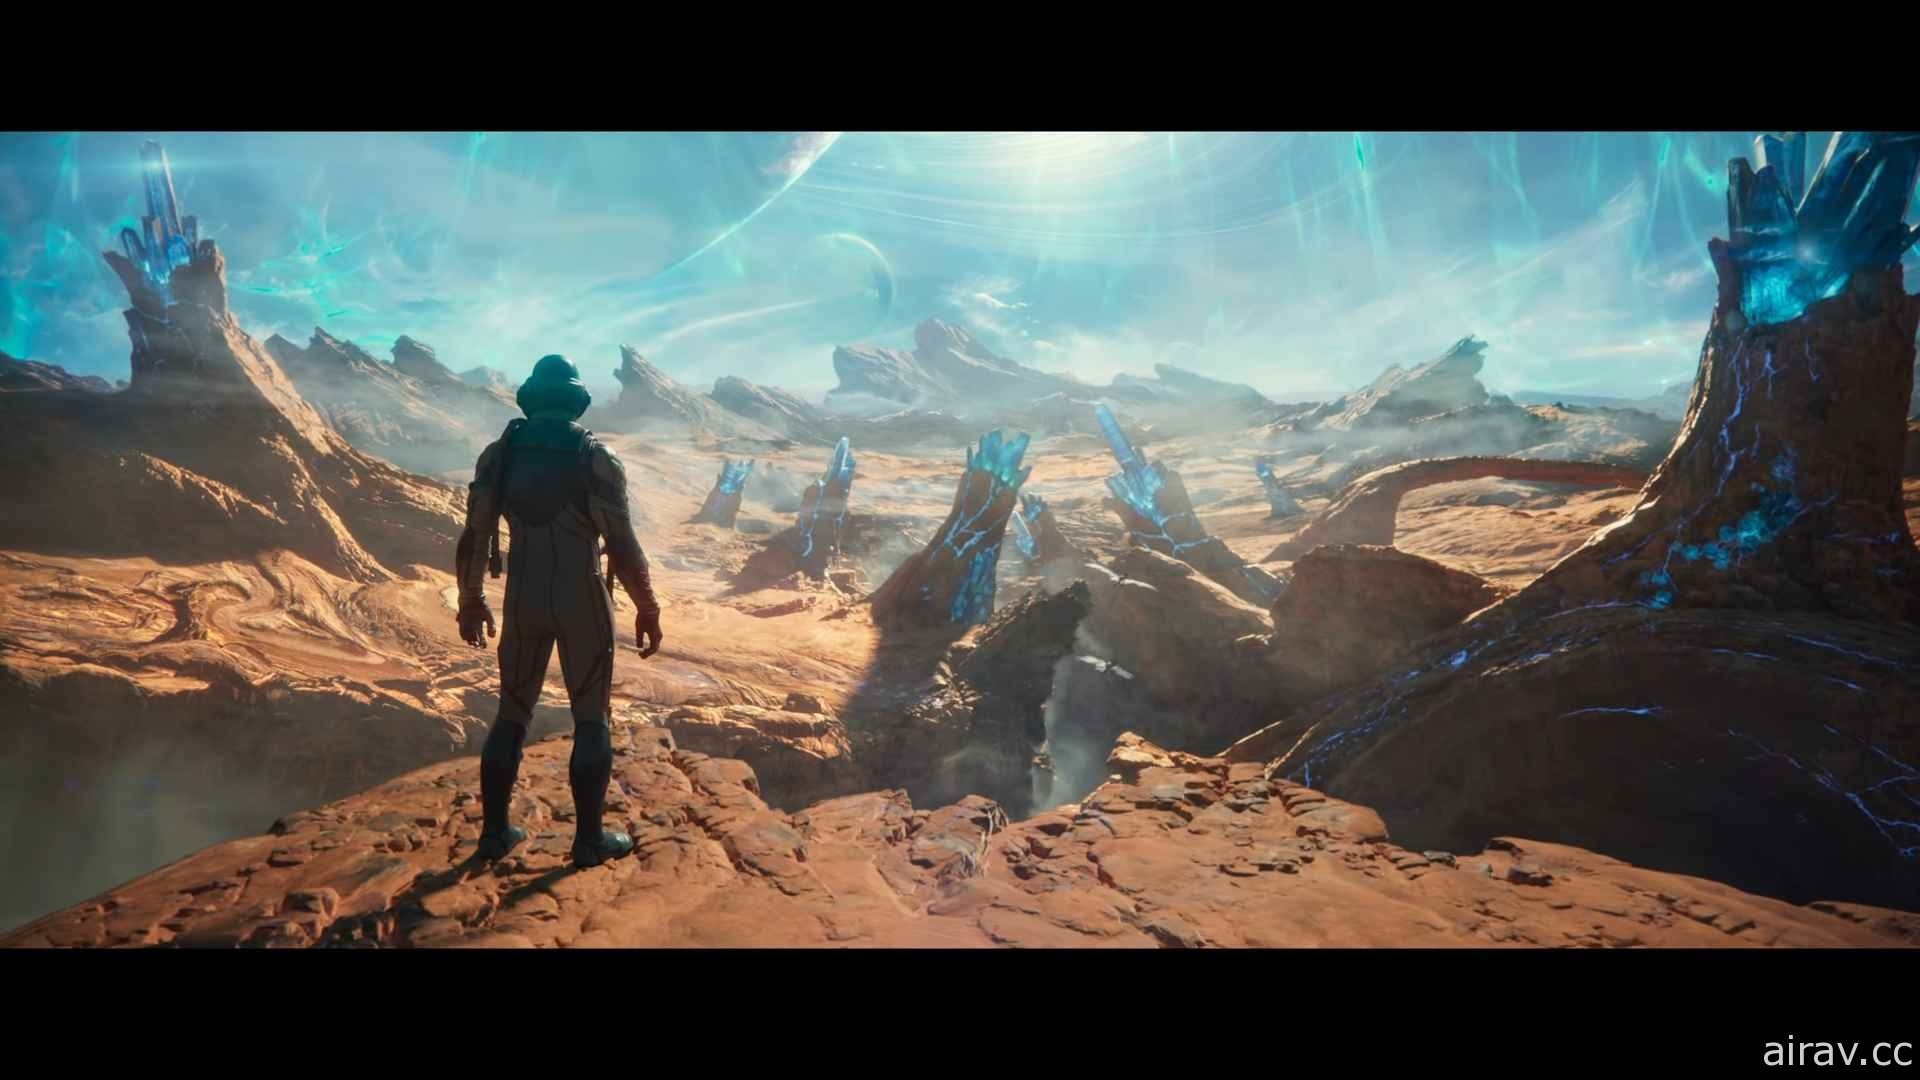 【E3 21】在壮阔的宇宙展开冒险《天外世界 2》释出游戏预告影片